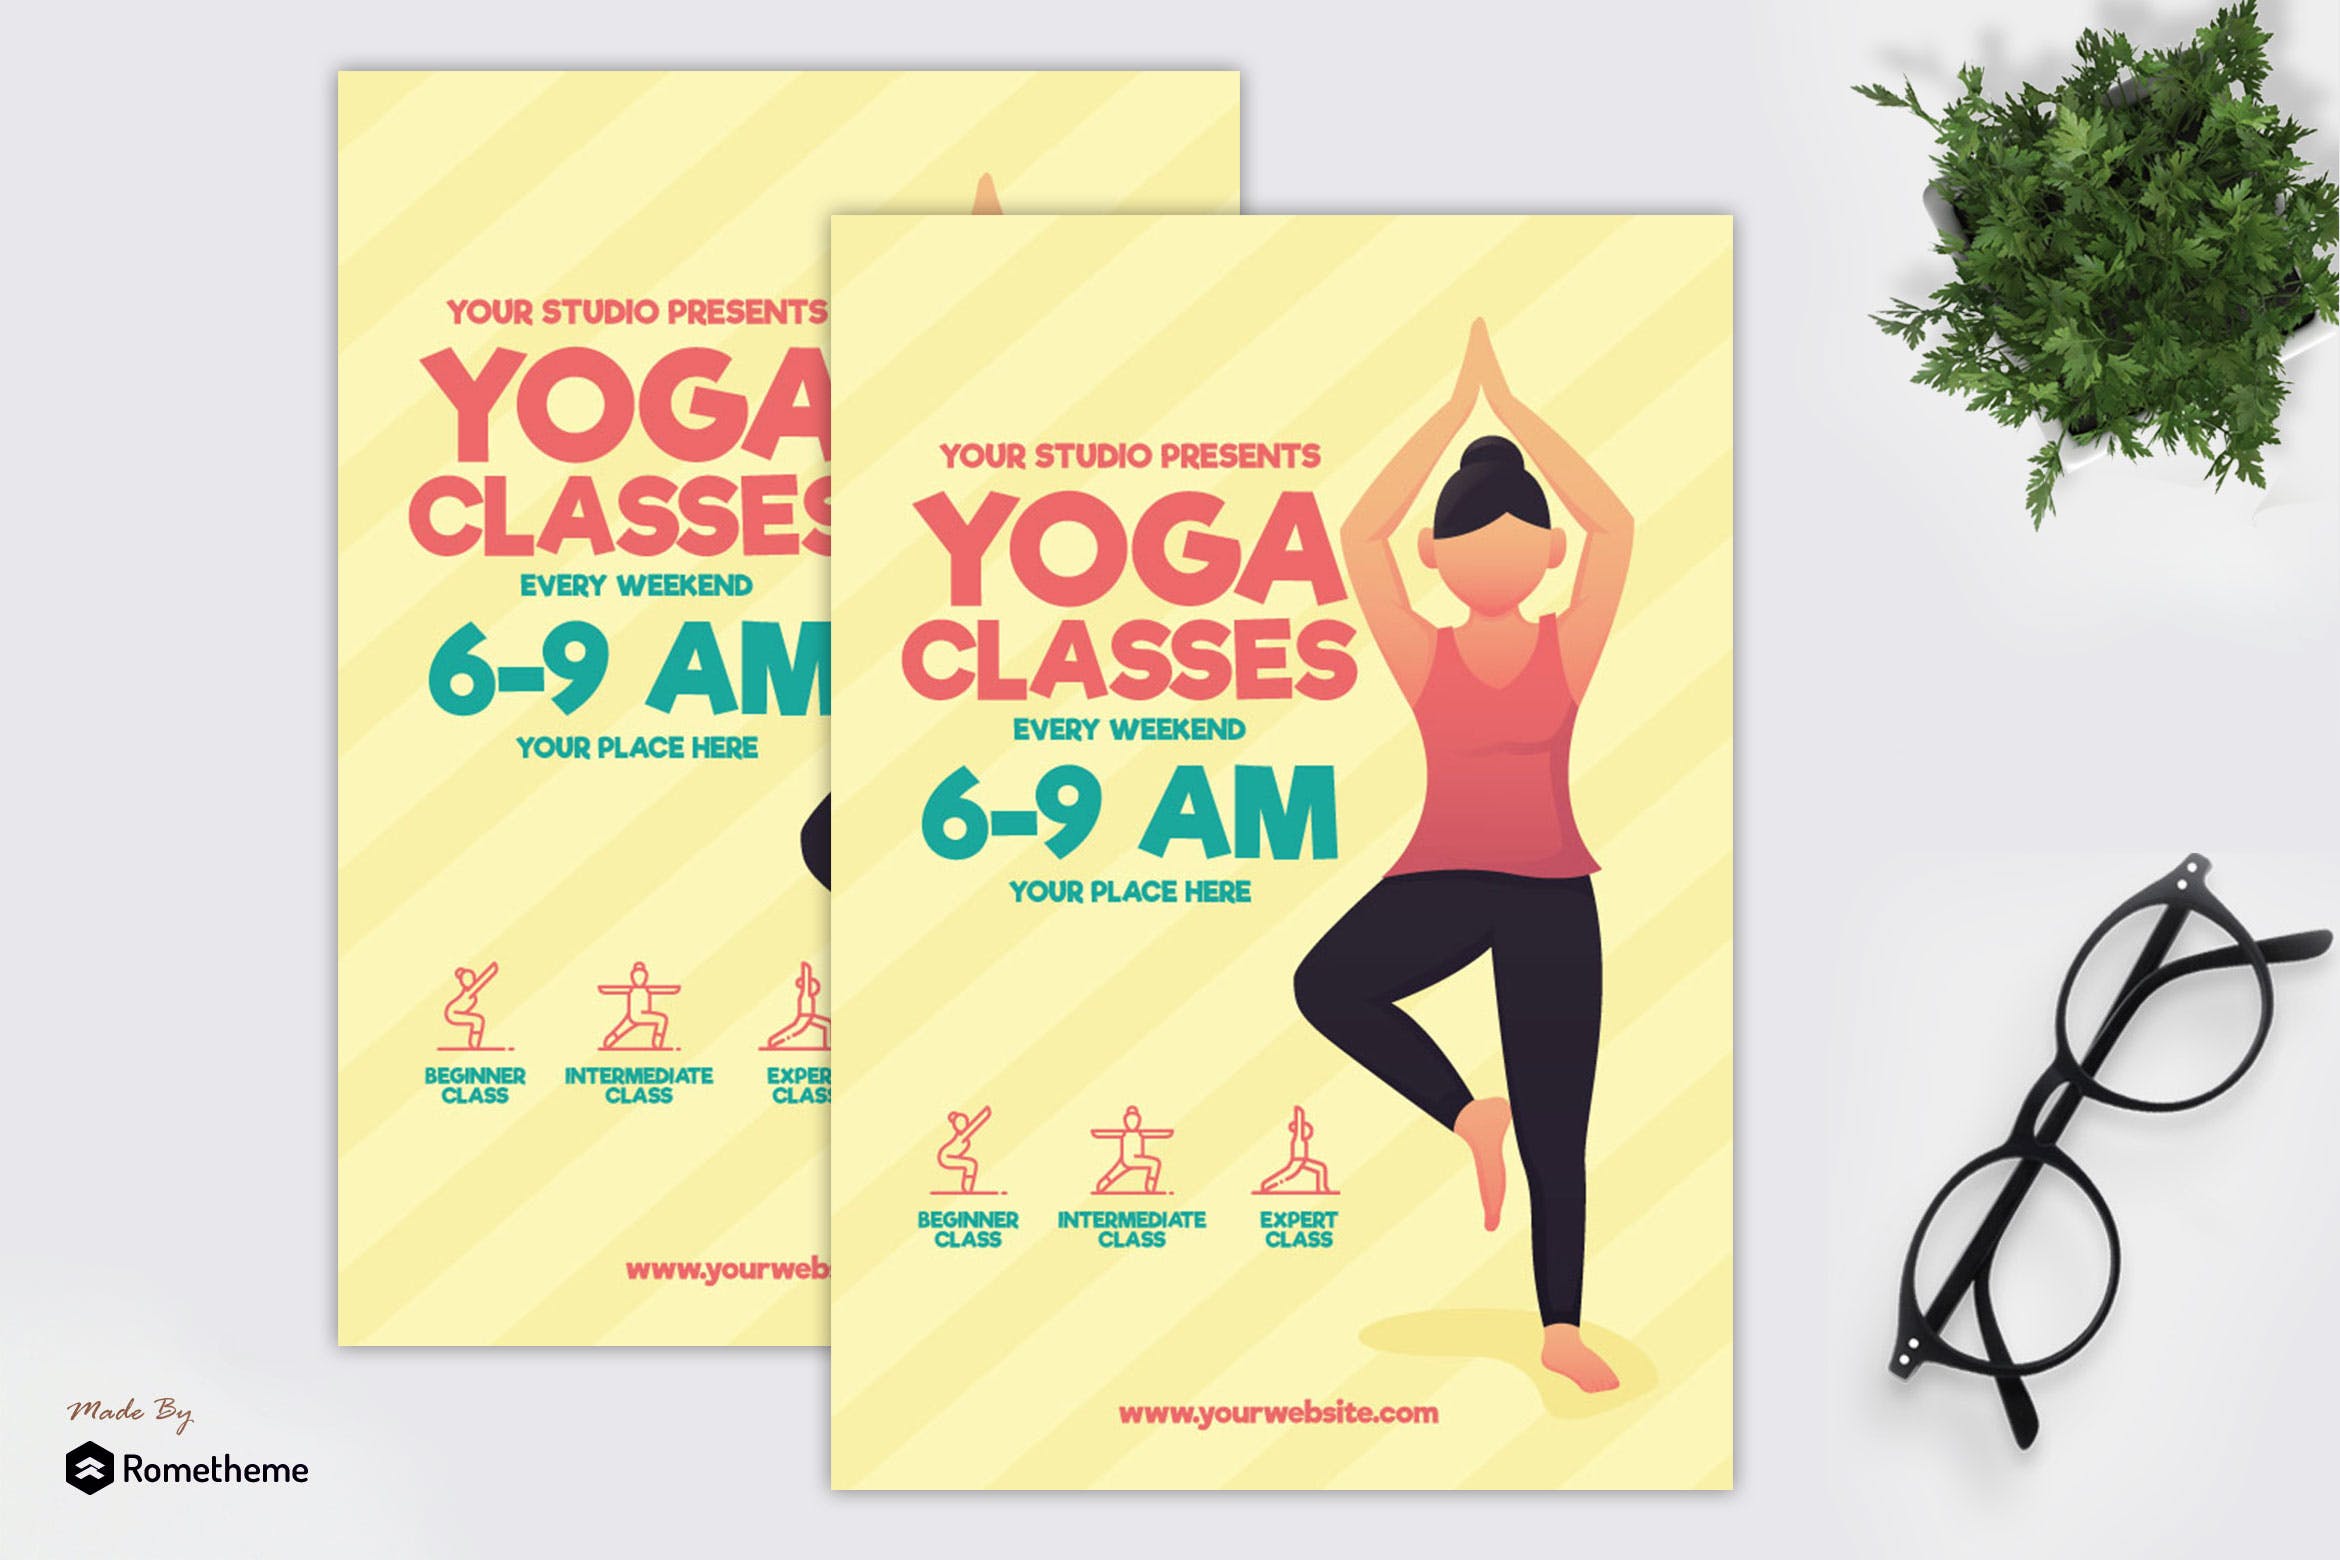 瑜伽培训课程推广宣传单设计模板 Yoga Classes – Flyer GR插图